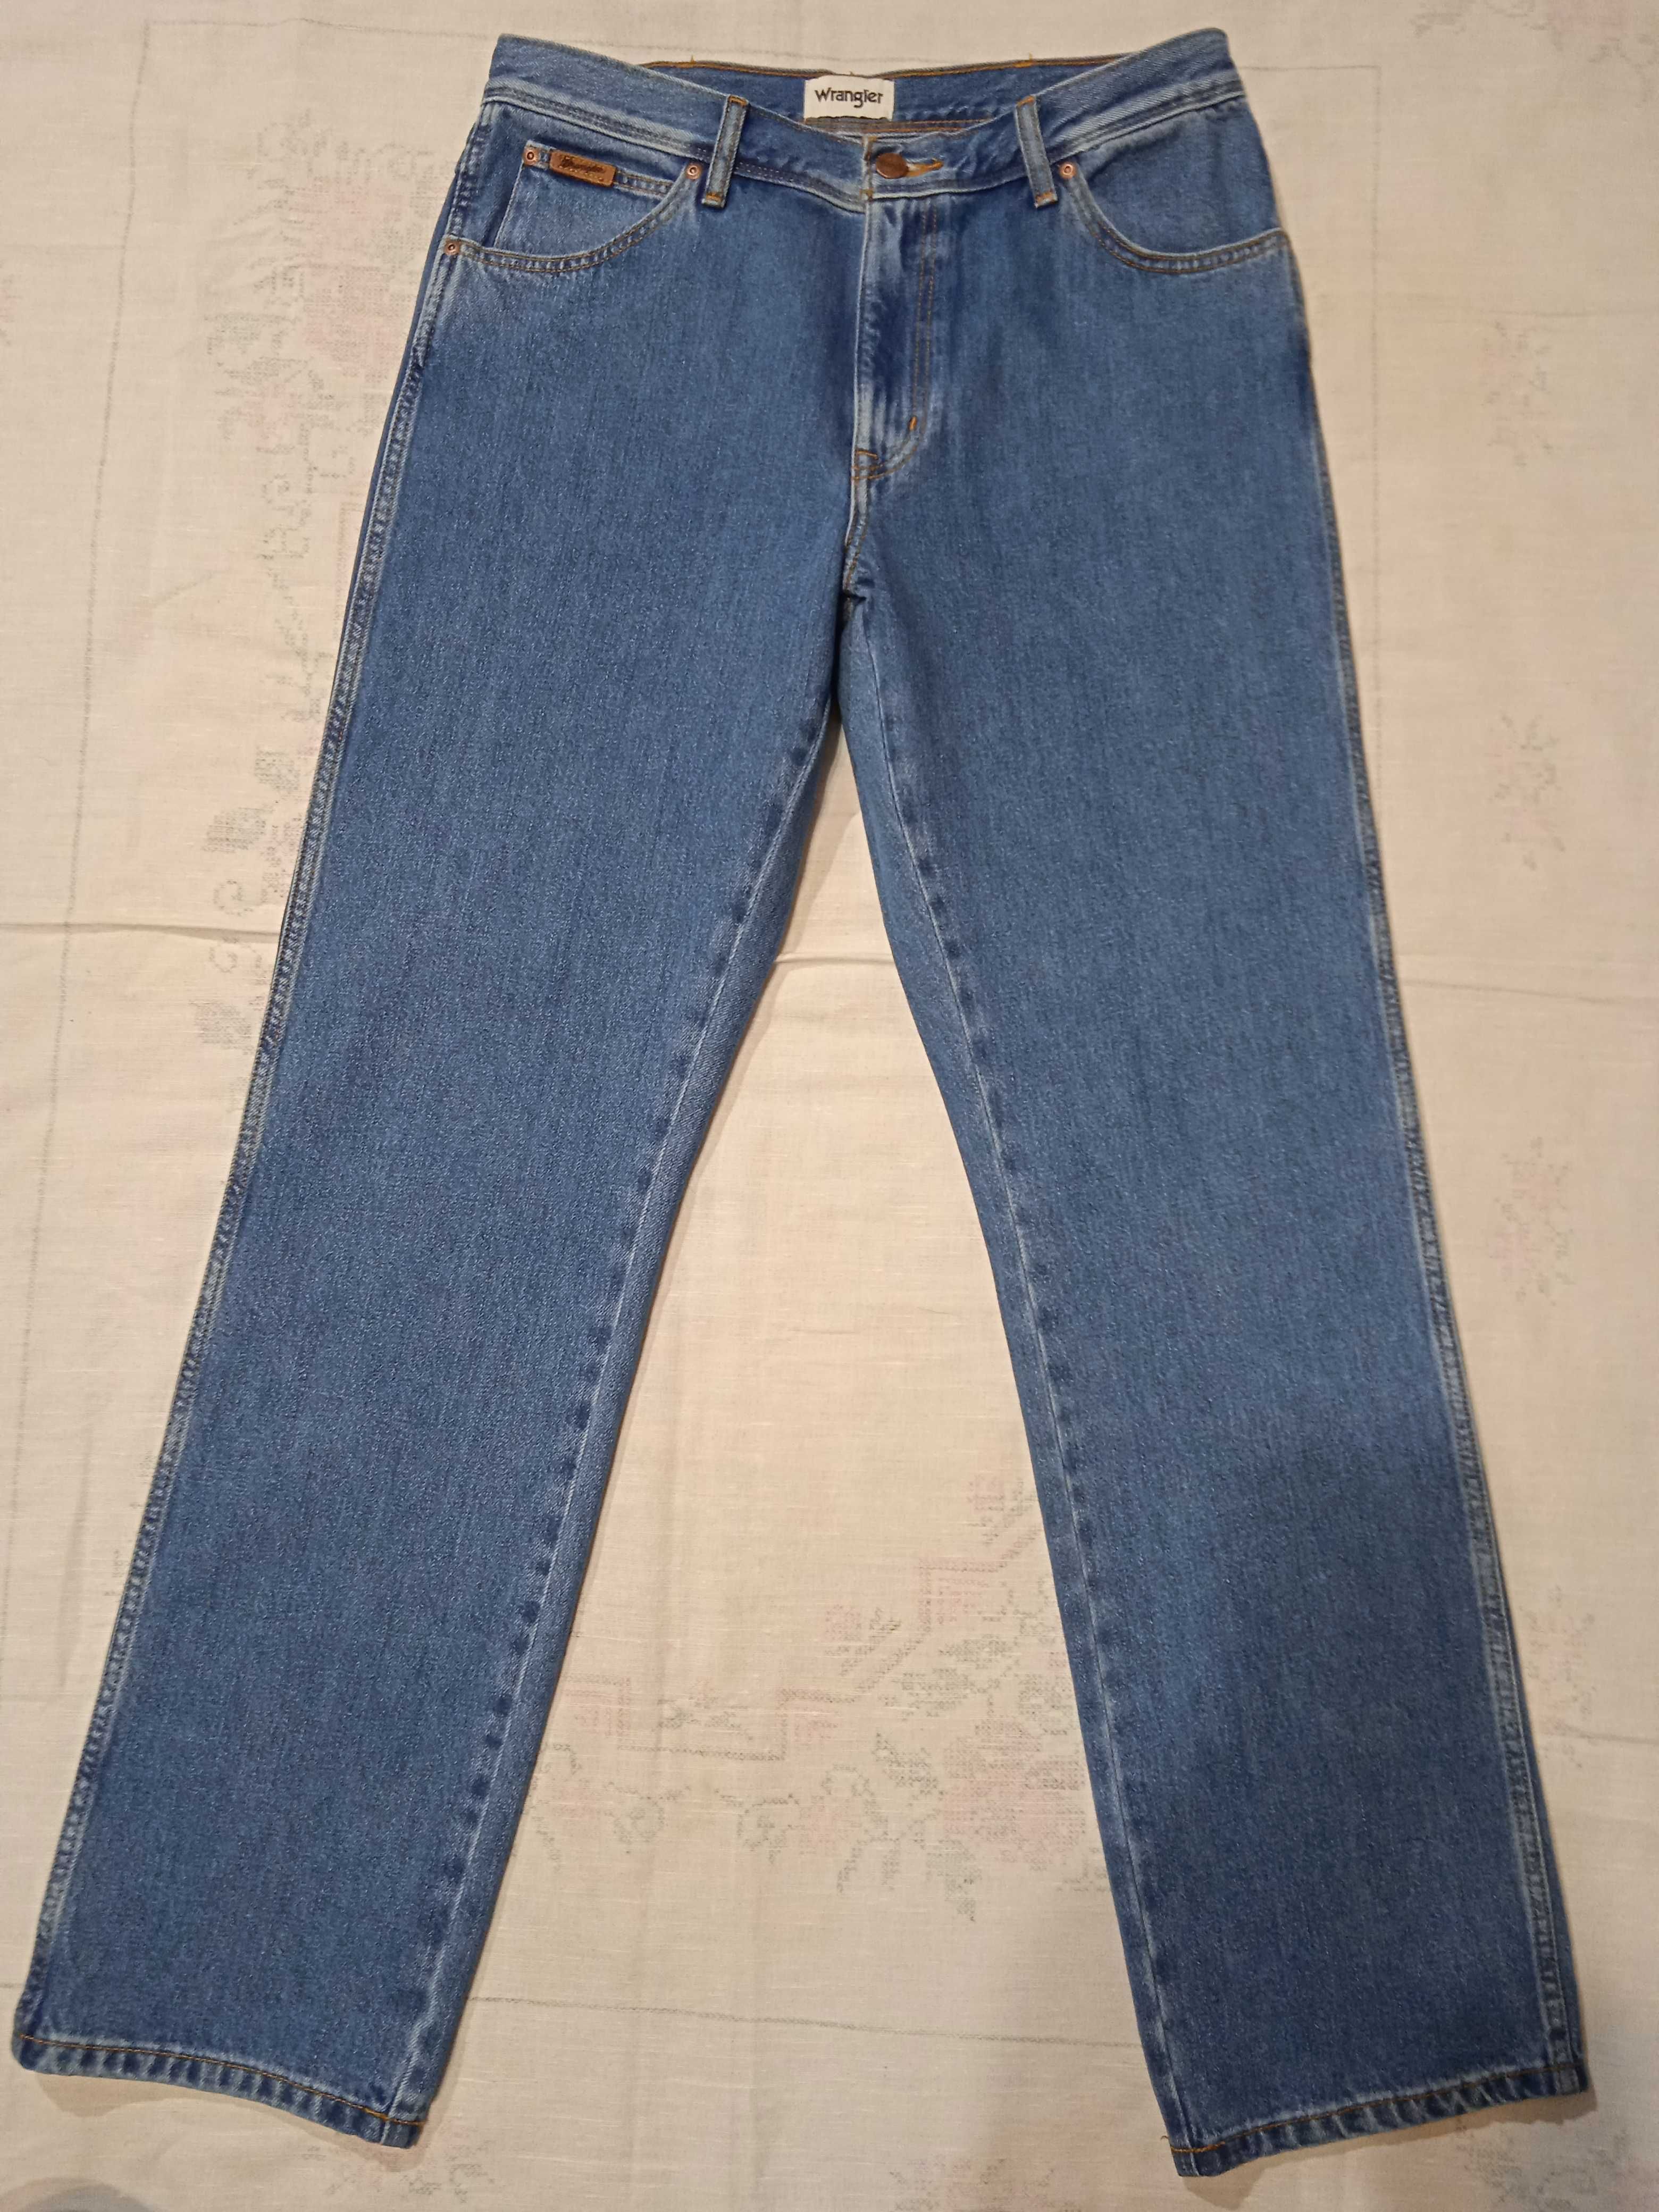 Wrangler Texas 821 Authentic Straight spodnie jeansy W34 L32